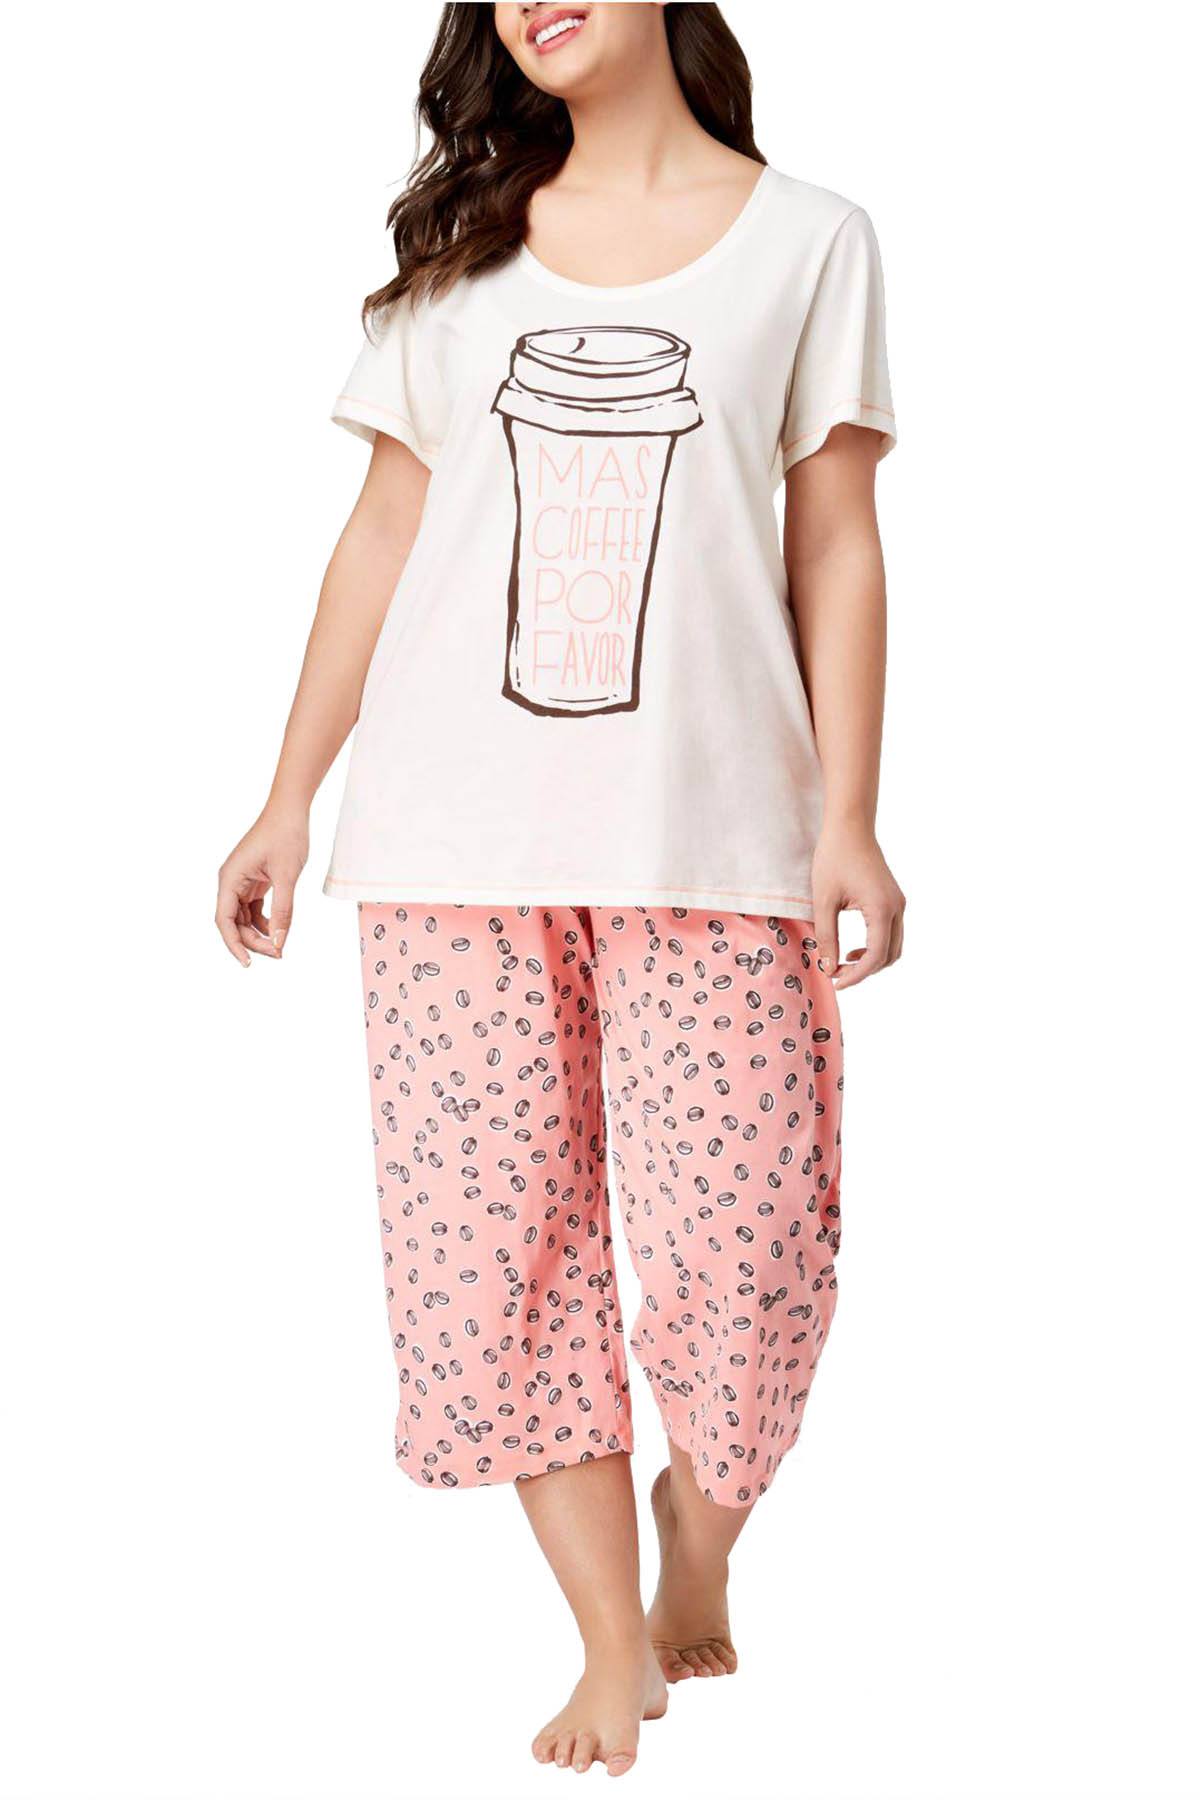 HUE PLUS Off-White/Peach Mas-Coffee 2pc Pajama Set